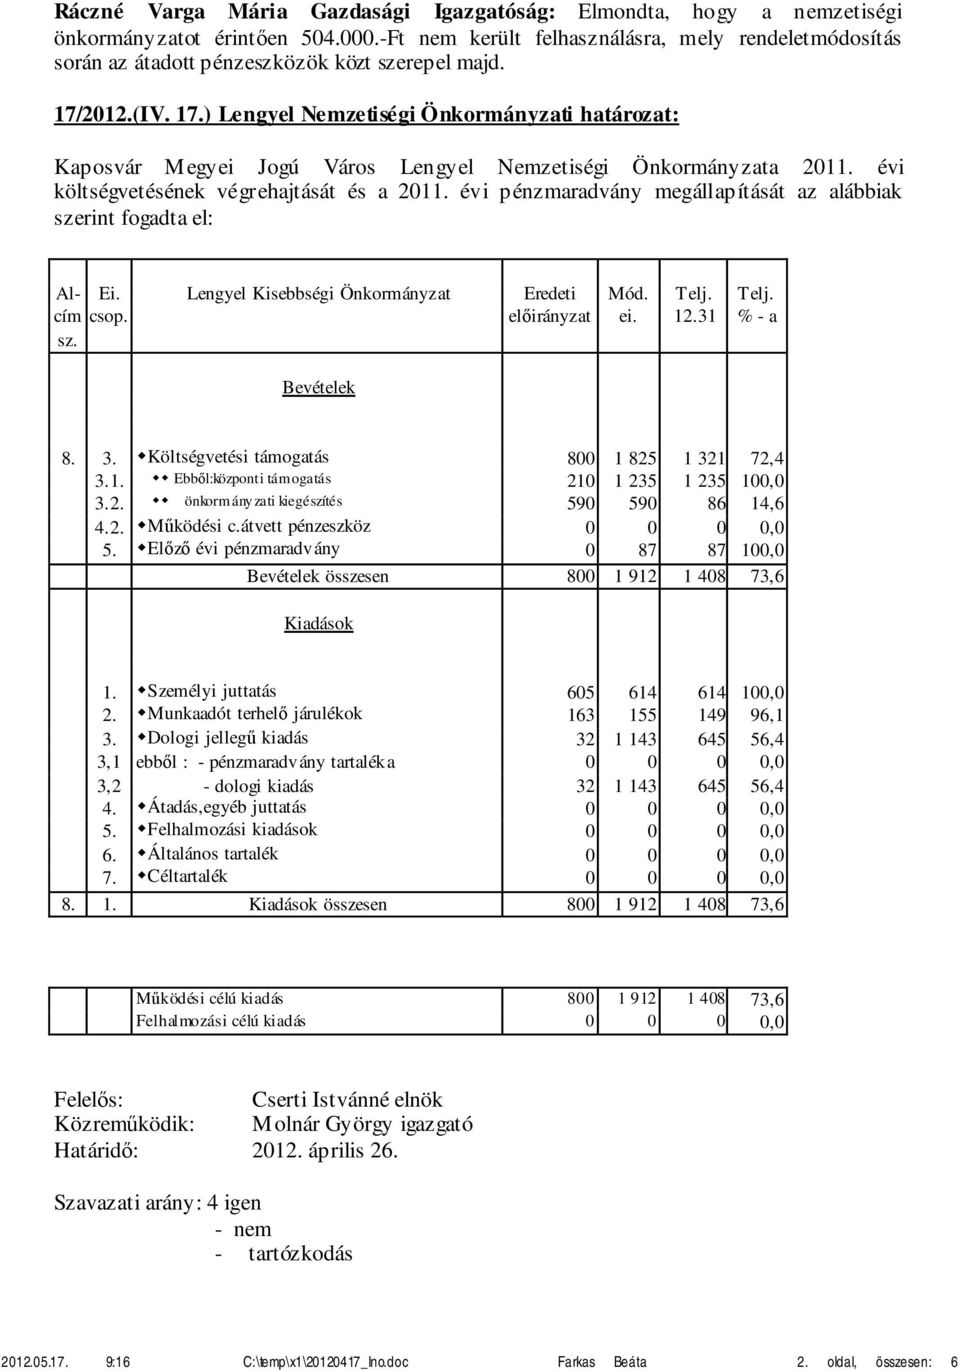 2012.(IV. 17.) Lengyel Nemzetiségi Önkormányzati határozat: Kaposvár Megyei Jogú Város Lengyel Nemzetiségi Önkormányzata 2011. évi költségvetésének végrehajtását és a 2011.